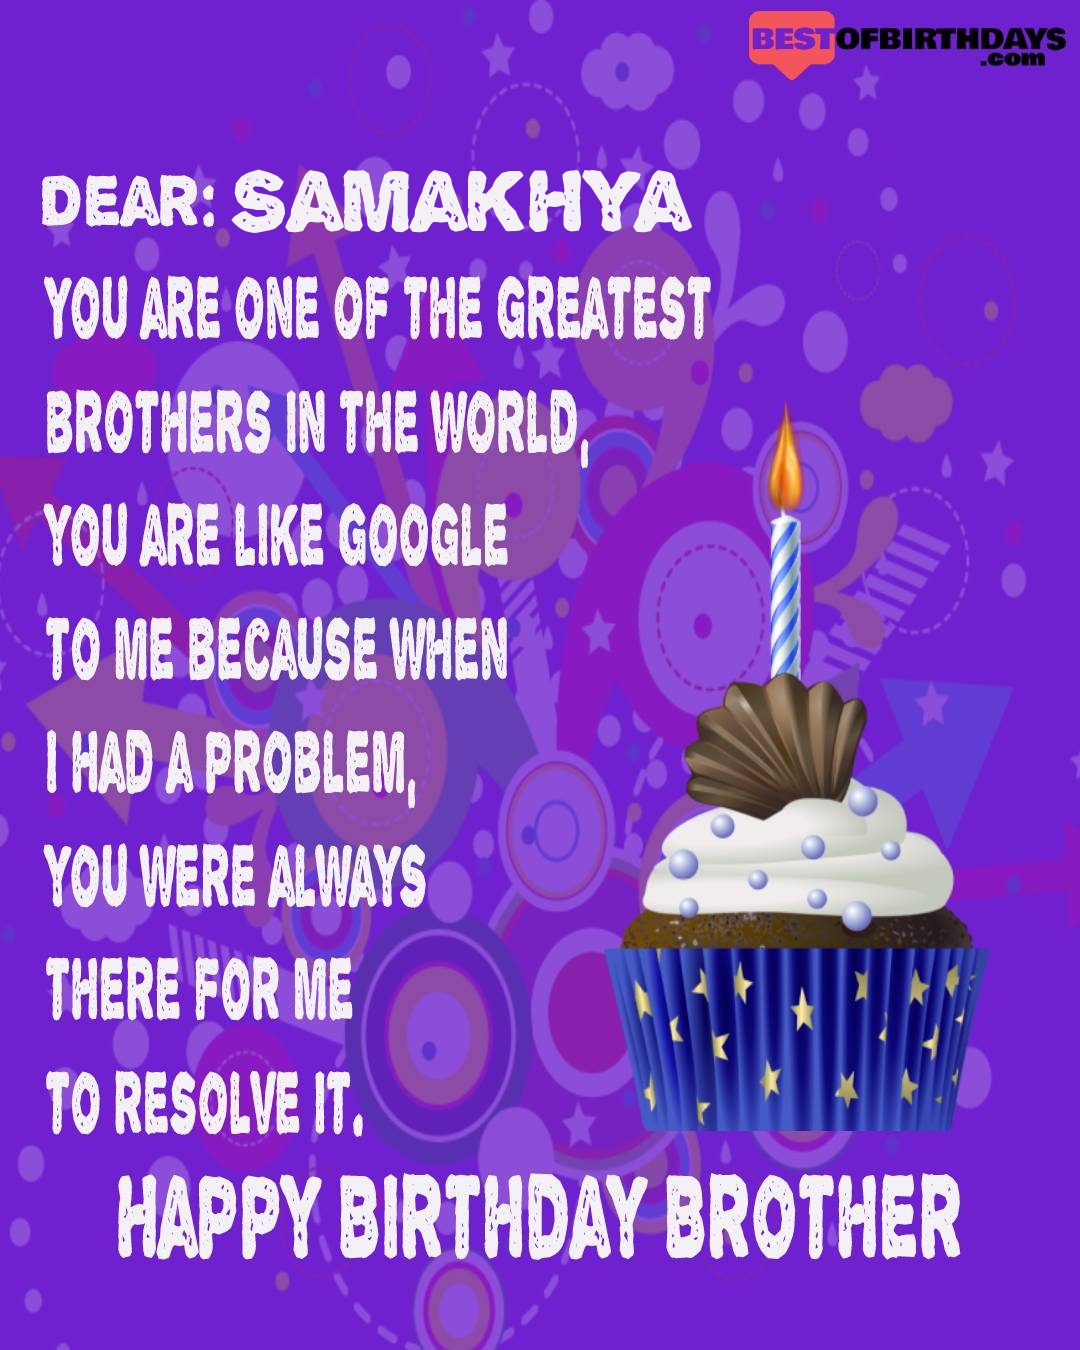 Happy birthday samakhya bhai brother bro